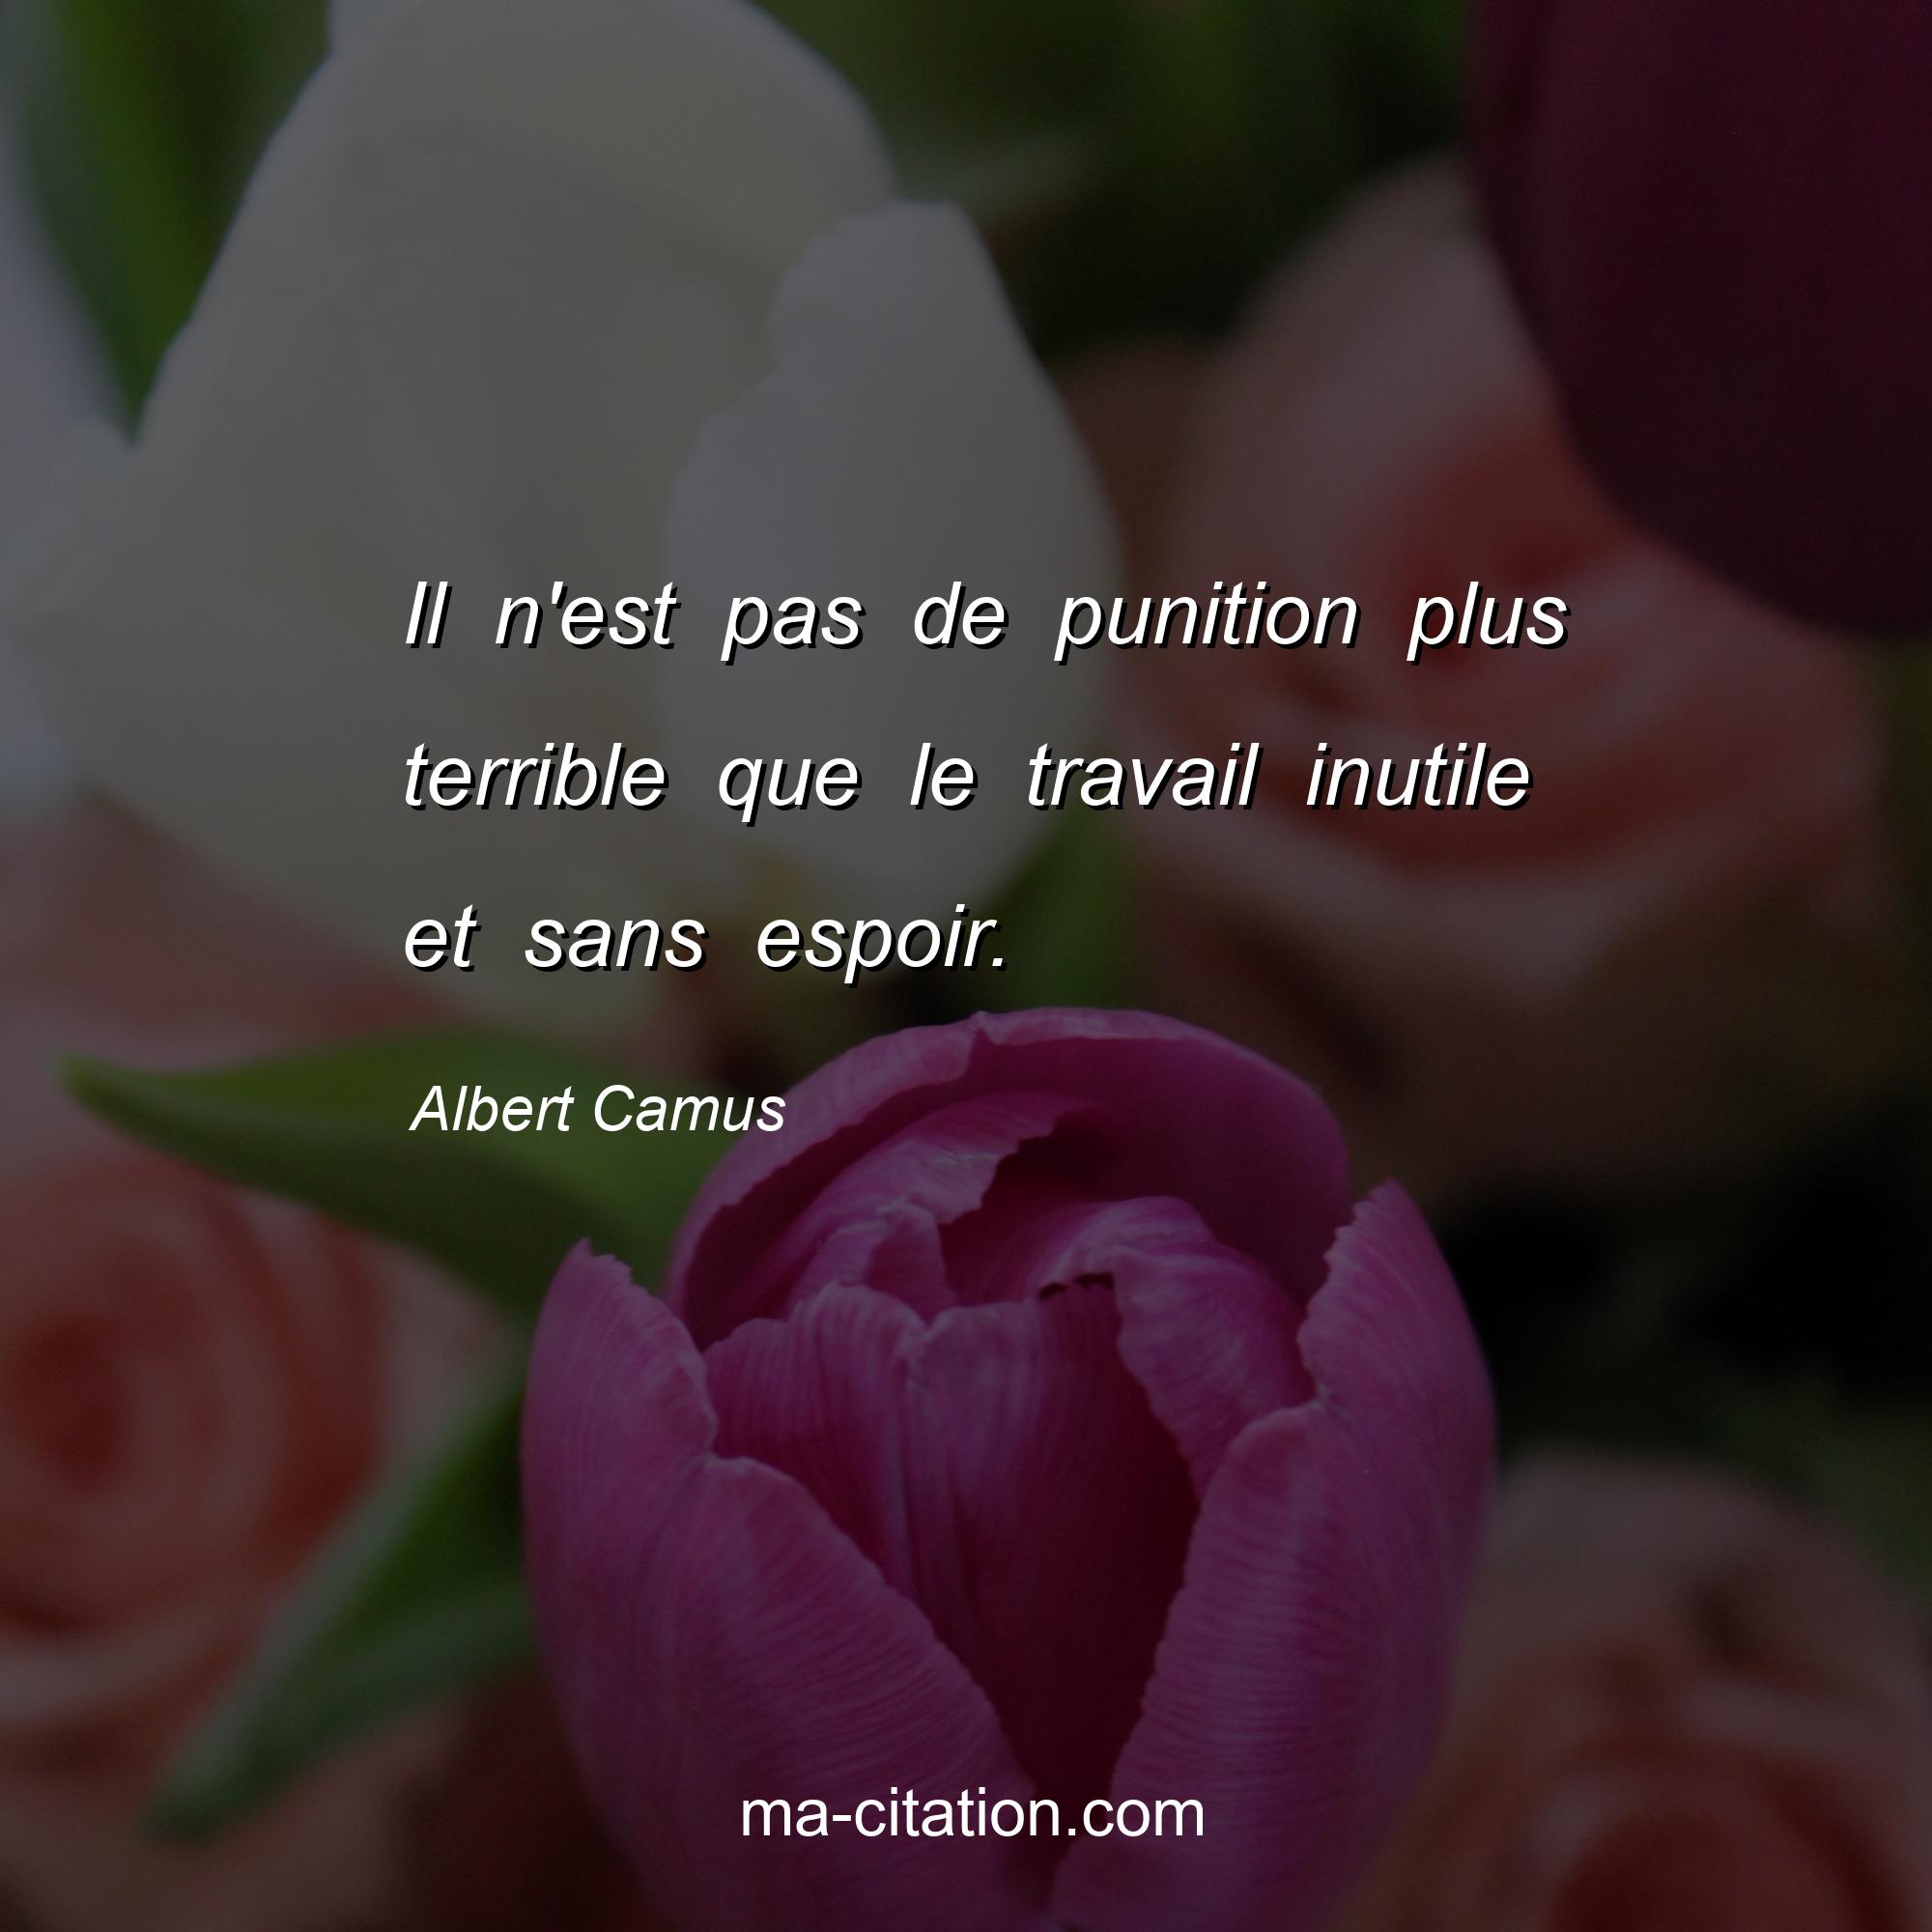 Albert Camus : Il n'est pas de punition plus terrible que le travail inutile et sans espoir.